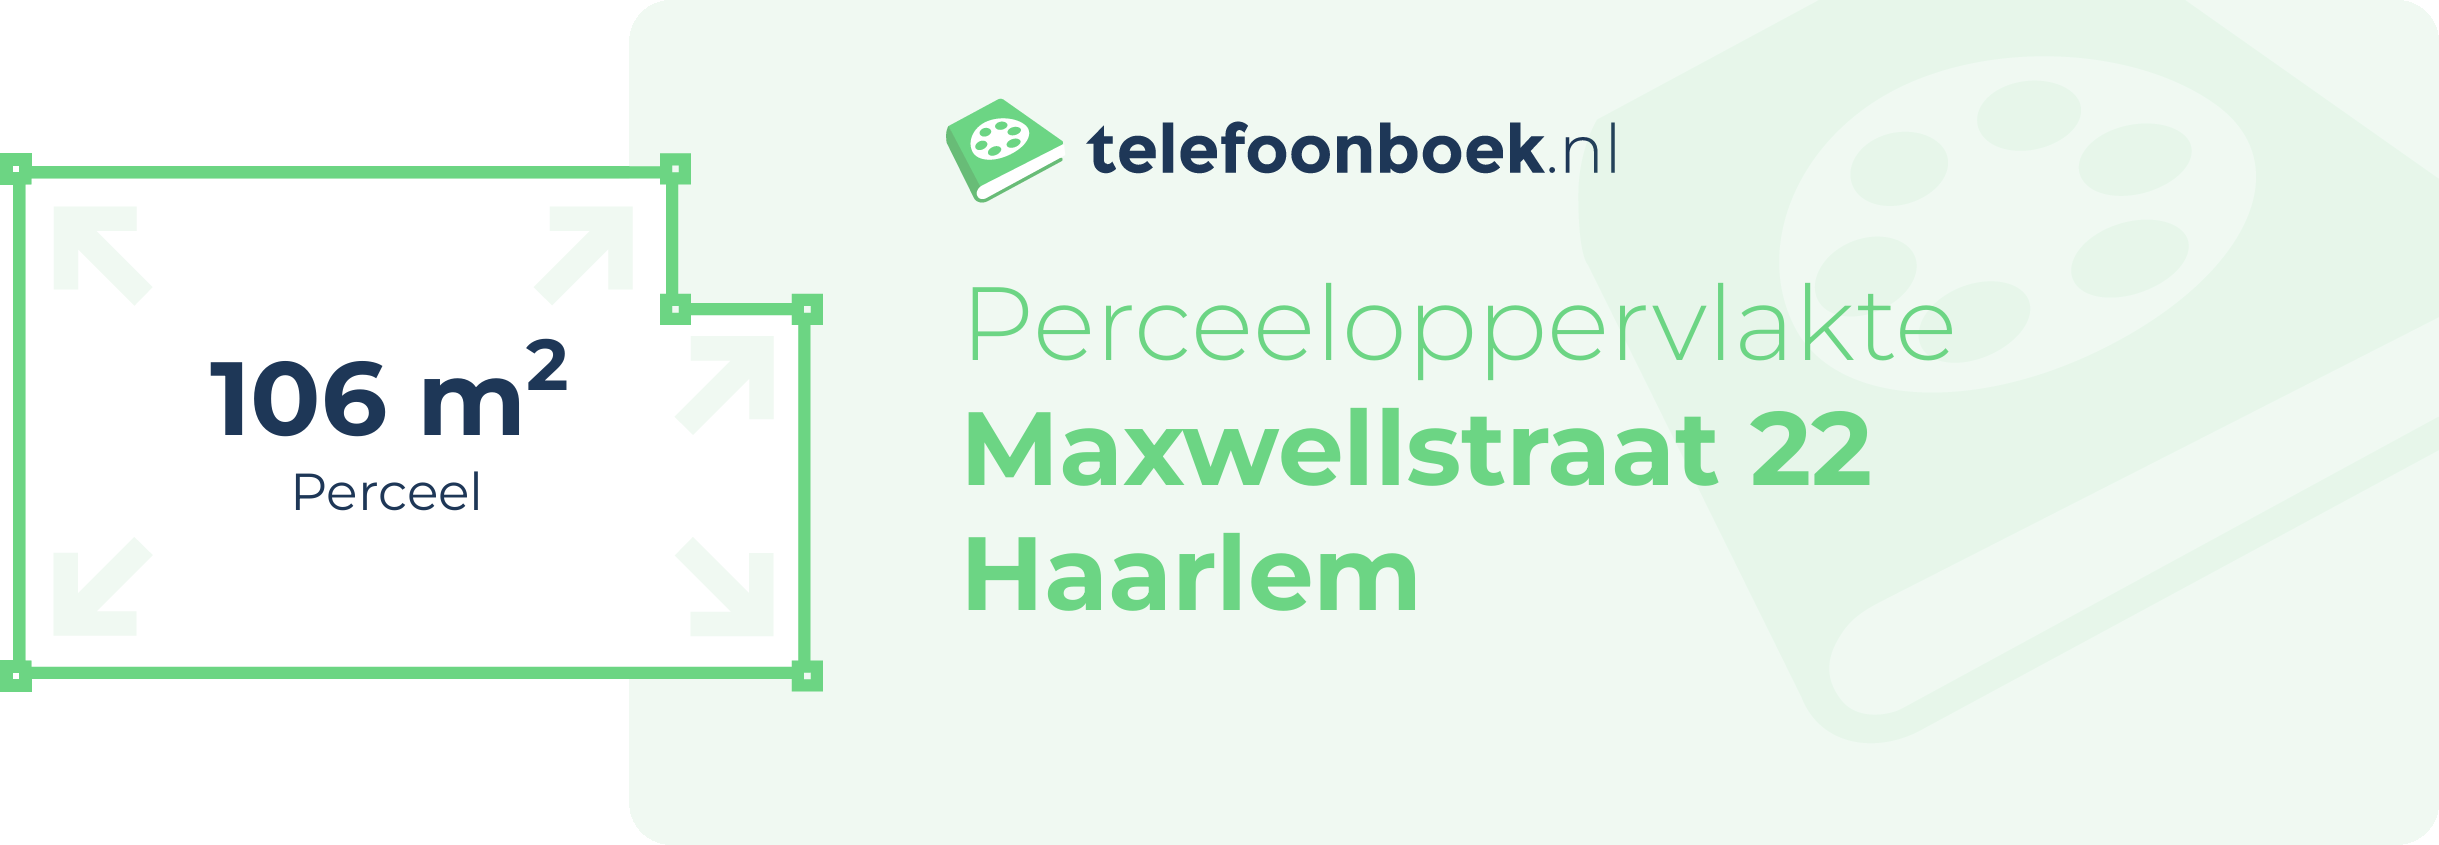 Perceeloppervlakte Maxwellstraat 22 Haarlem